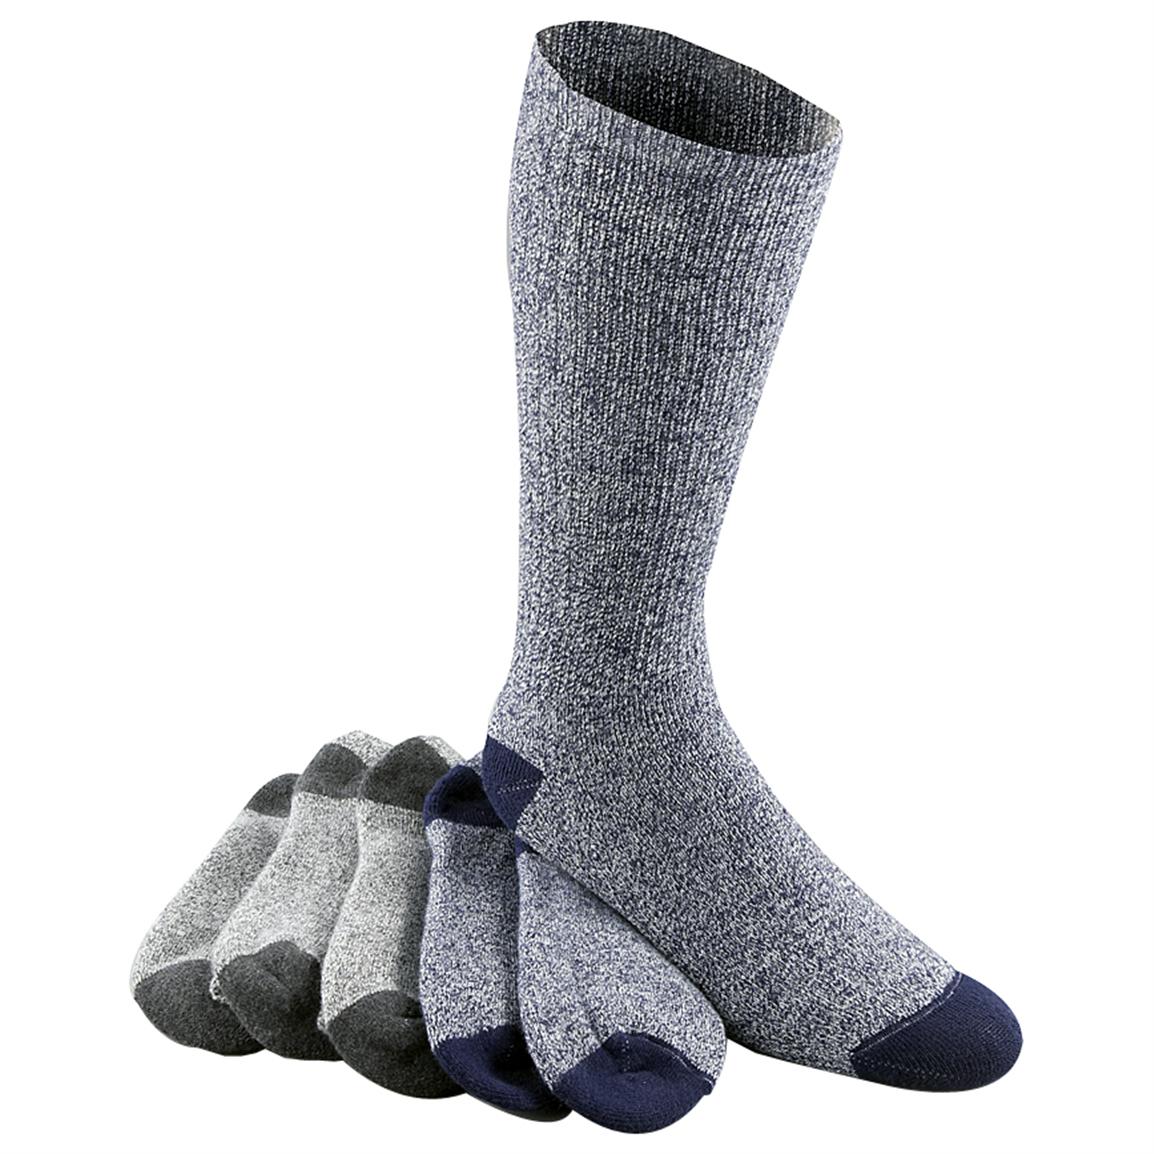 6Pk. Ultra Soft Moisture Wicking Socks 187672, Socks at Sportsman's Guide